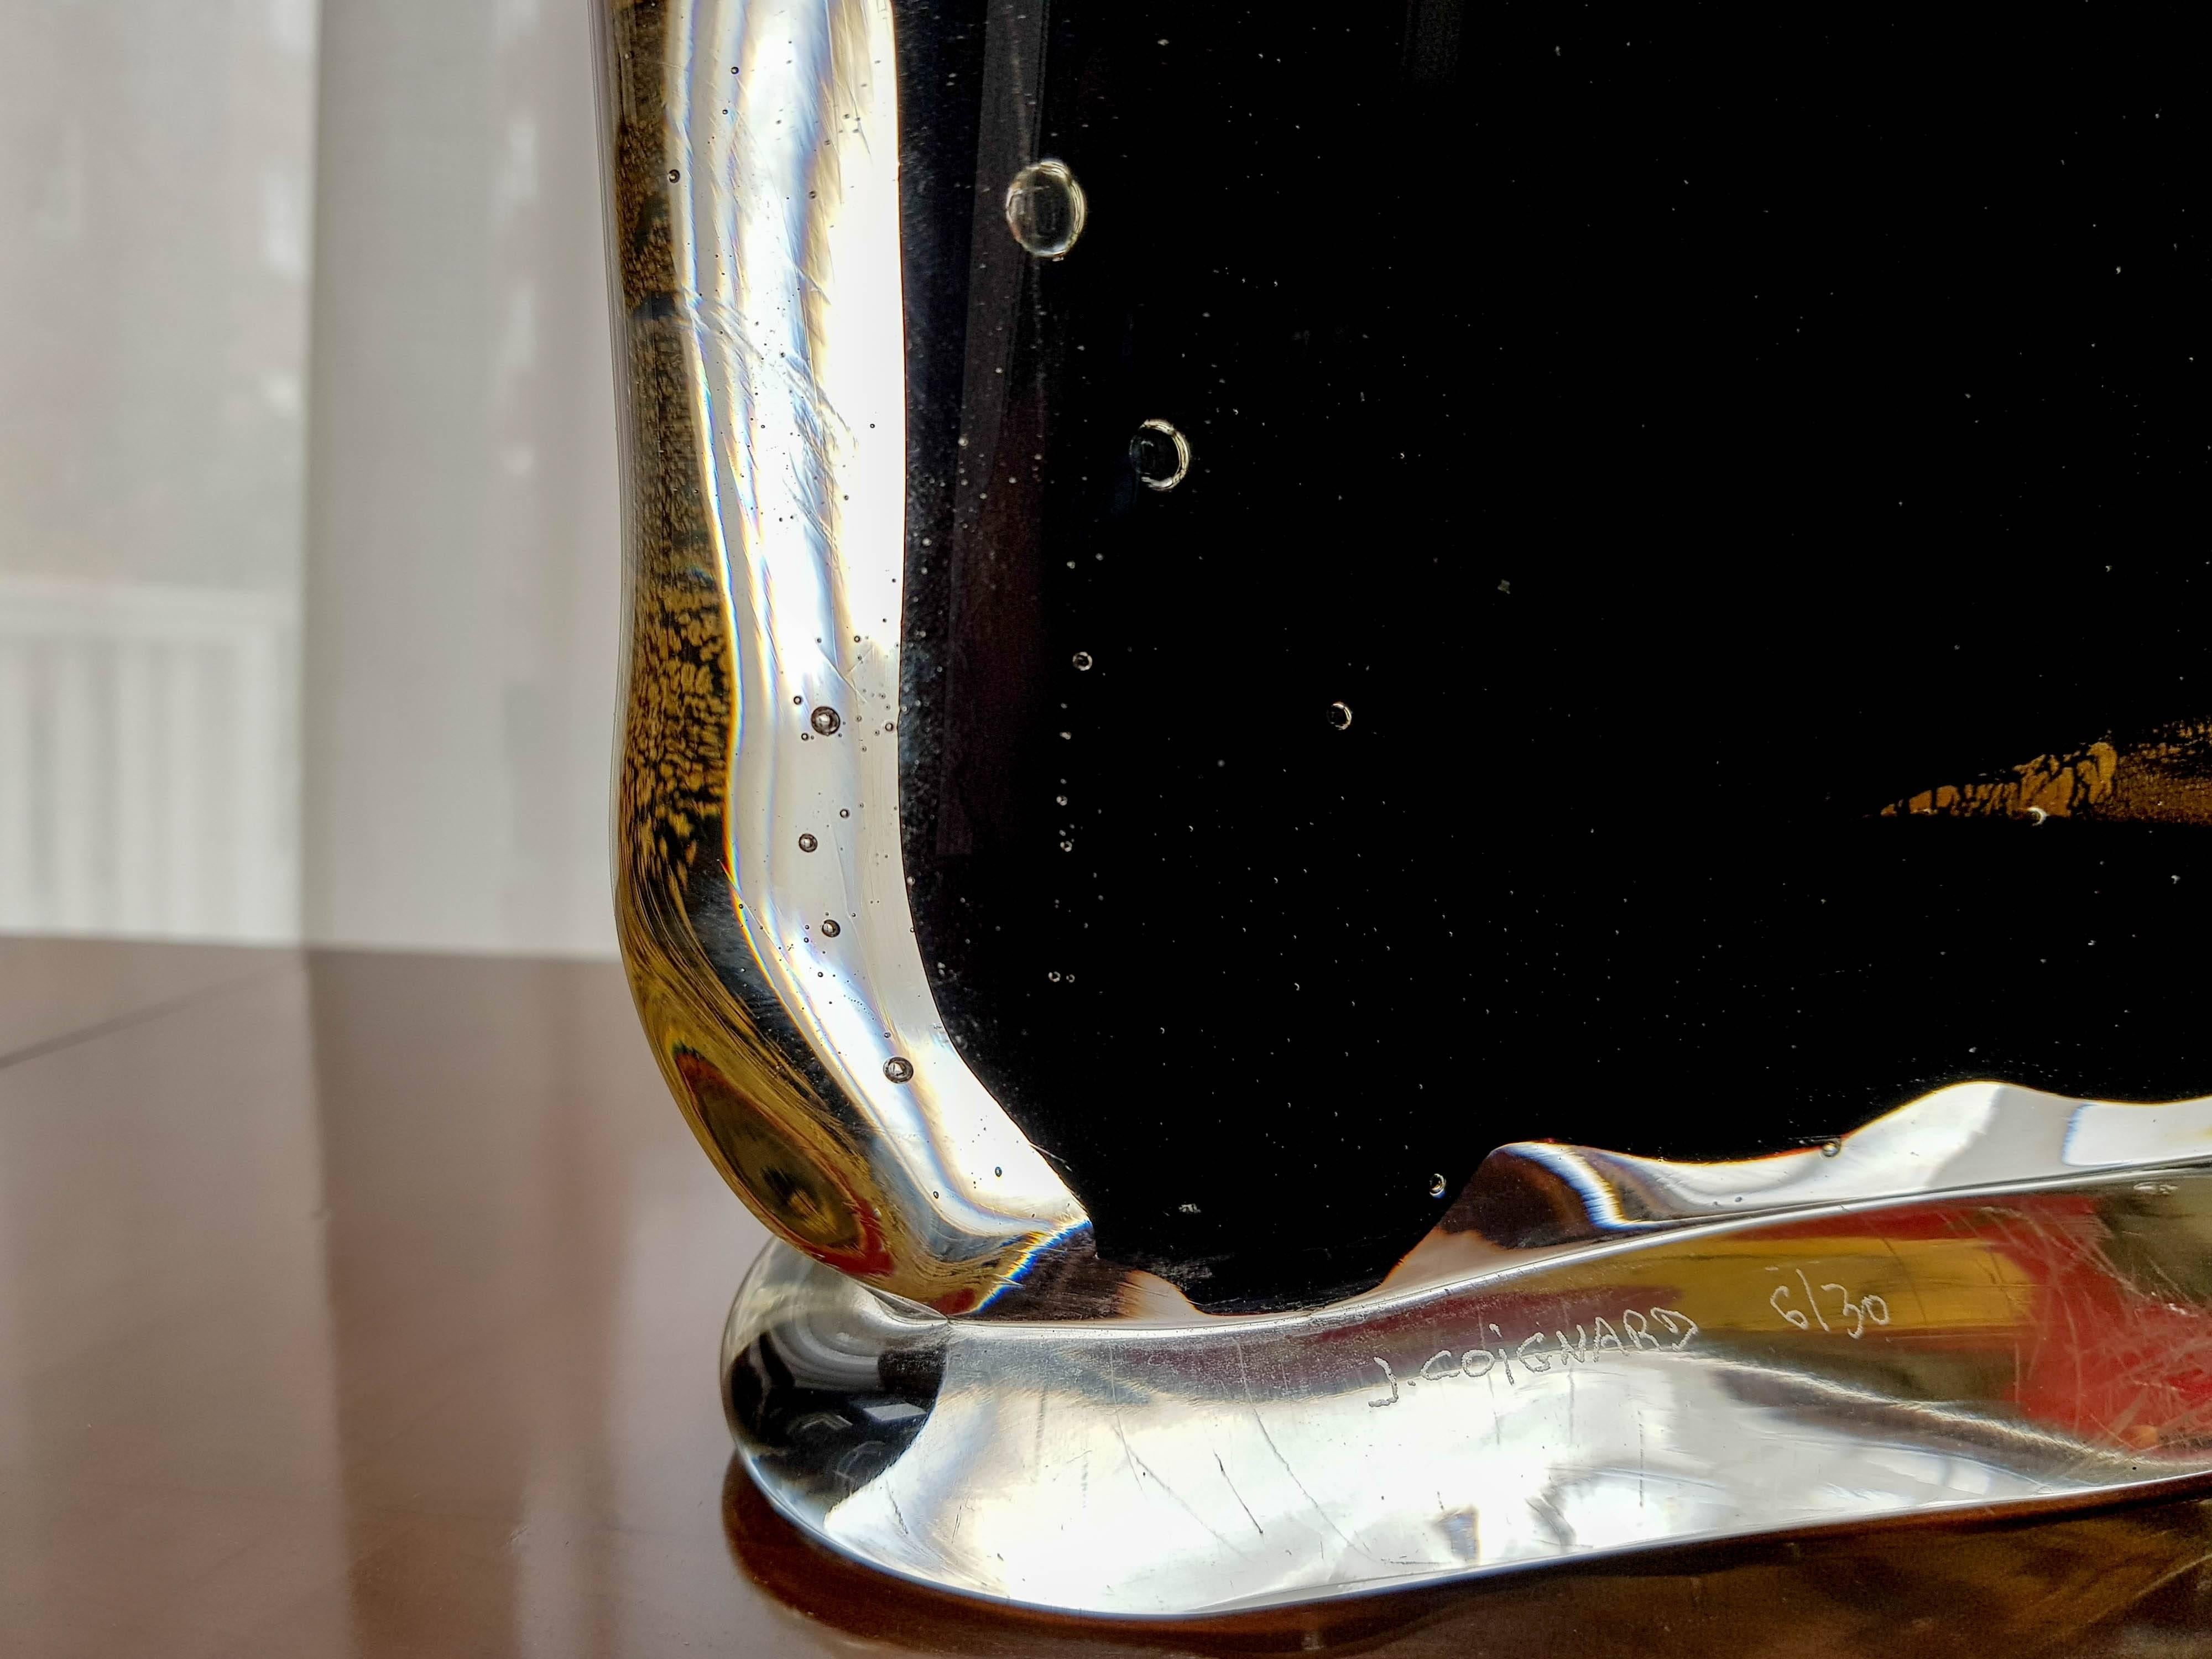 Sculpture en verre massif du célèbre artiste français James Coignard (1925-2008). Verre massif de Murano incorporant de la feuille d'or et du sang de boeuf. C'est le numéro 6 sur 30. Pièce très impressionnante en personne. Pèse 25 kilos
signé.